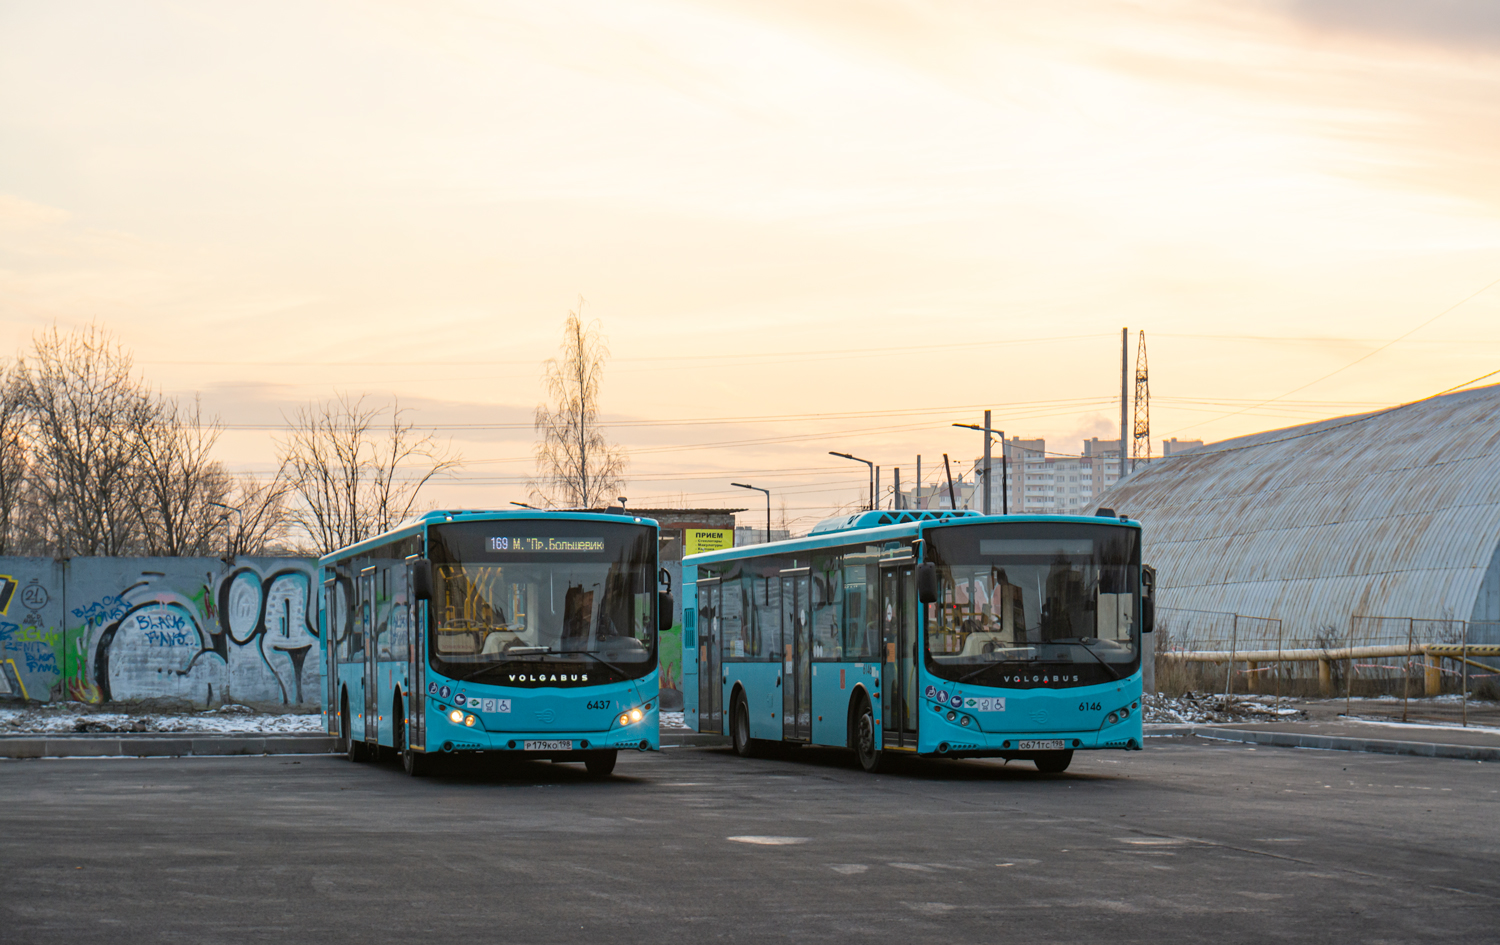 San Pietroburgo, Volgabus-5270.G2 (LNG) # 6437; San Pietroburgo, Volgabus-5270.G2 (LNG) # 6146